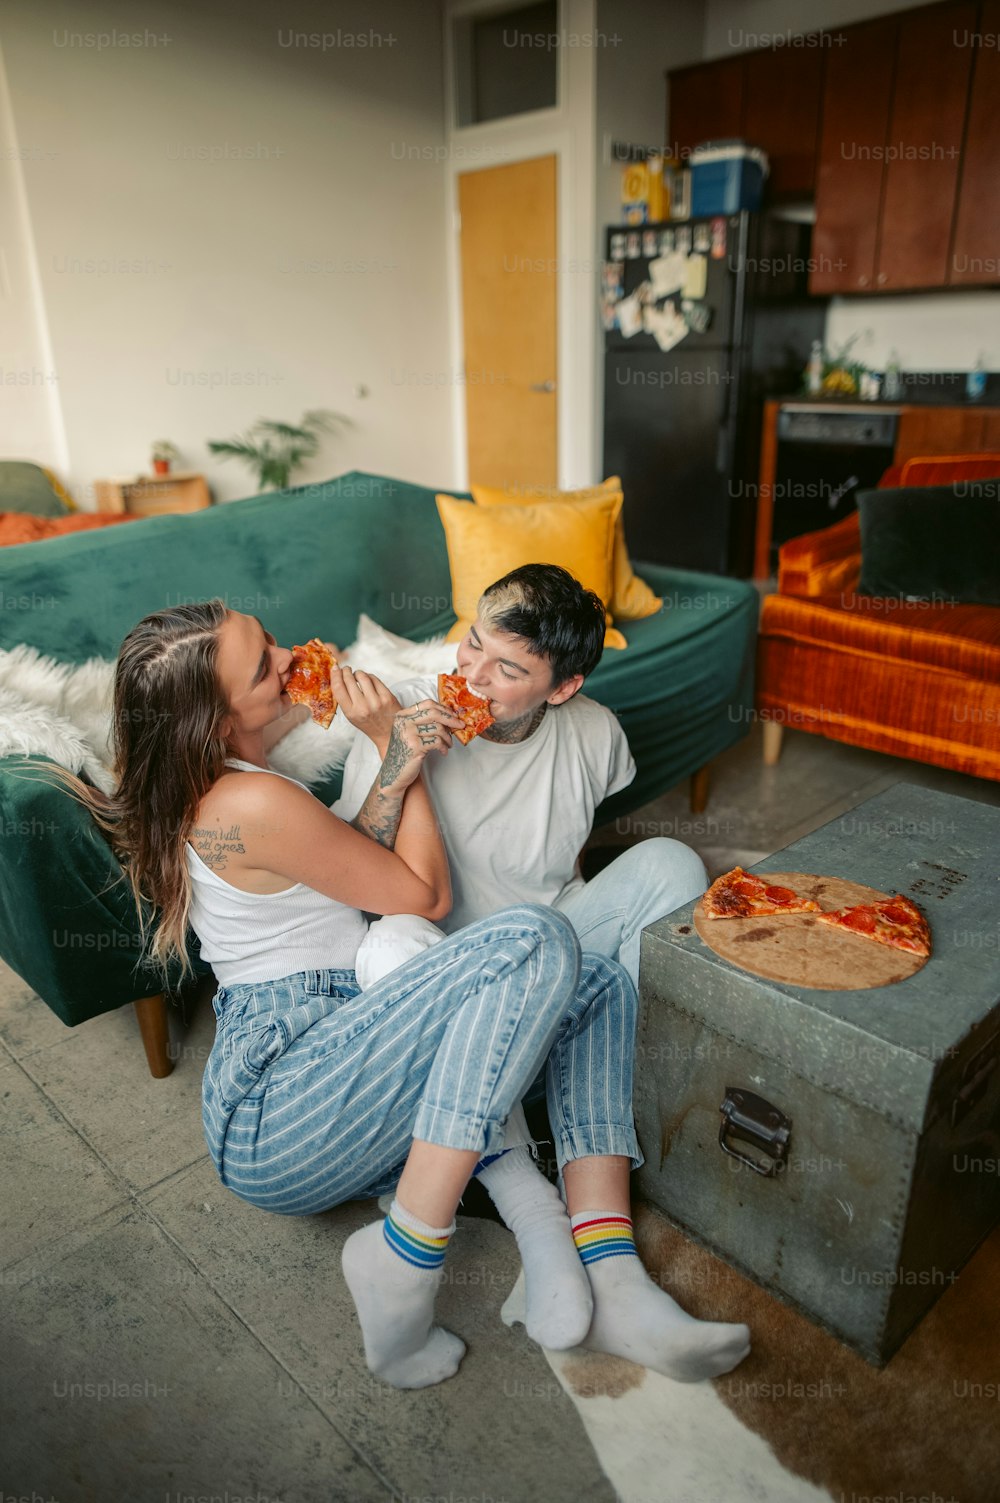 Un hombre y una mujer sentados en un sofá comiendo pizza